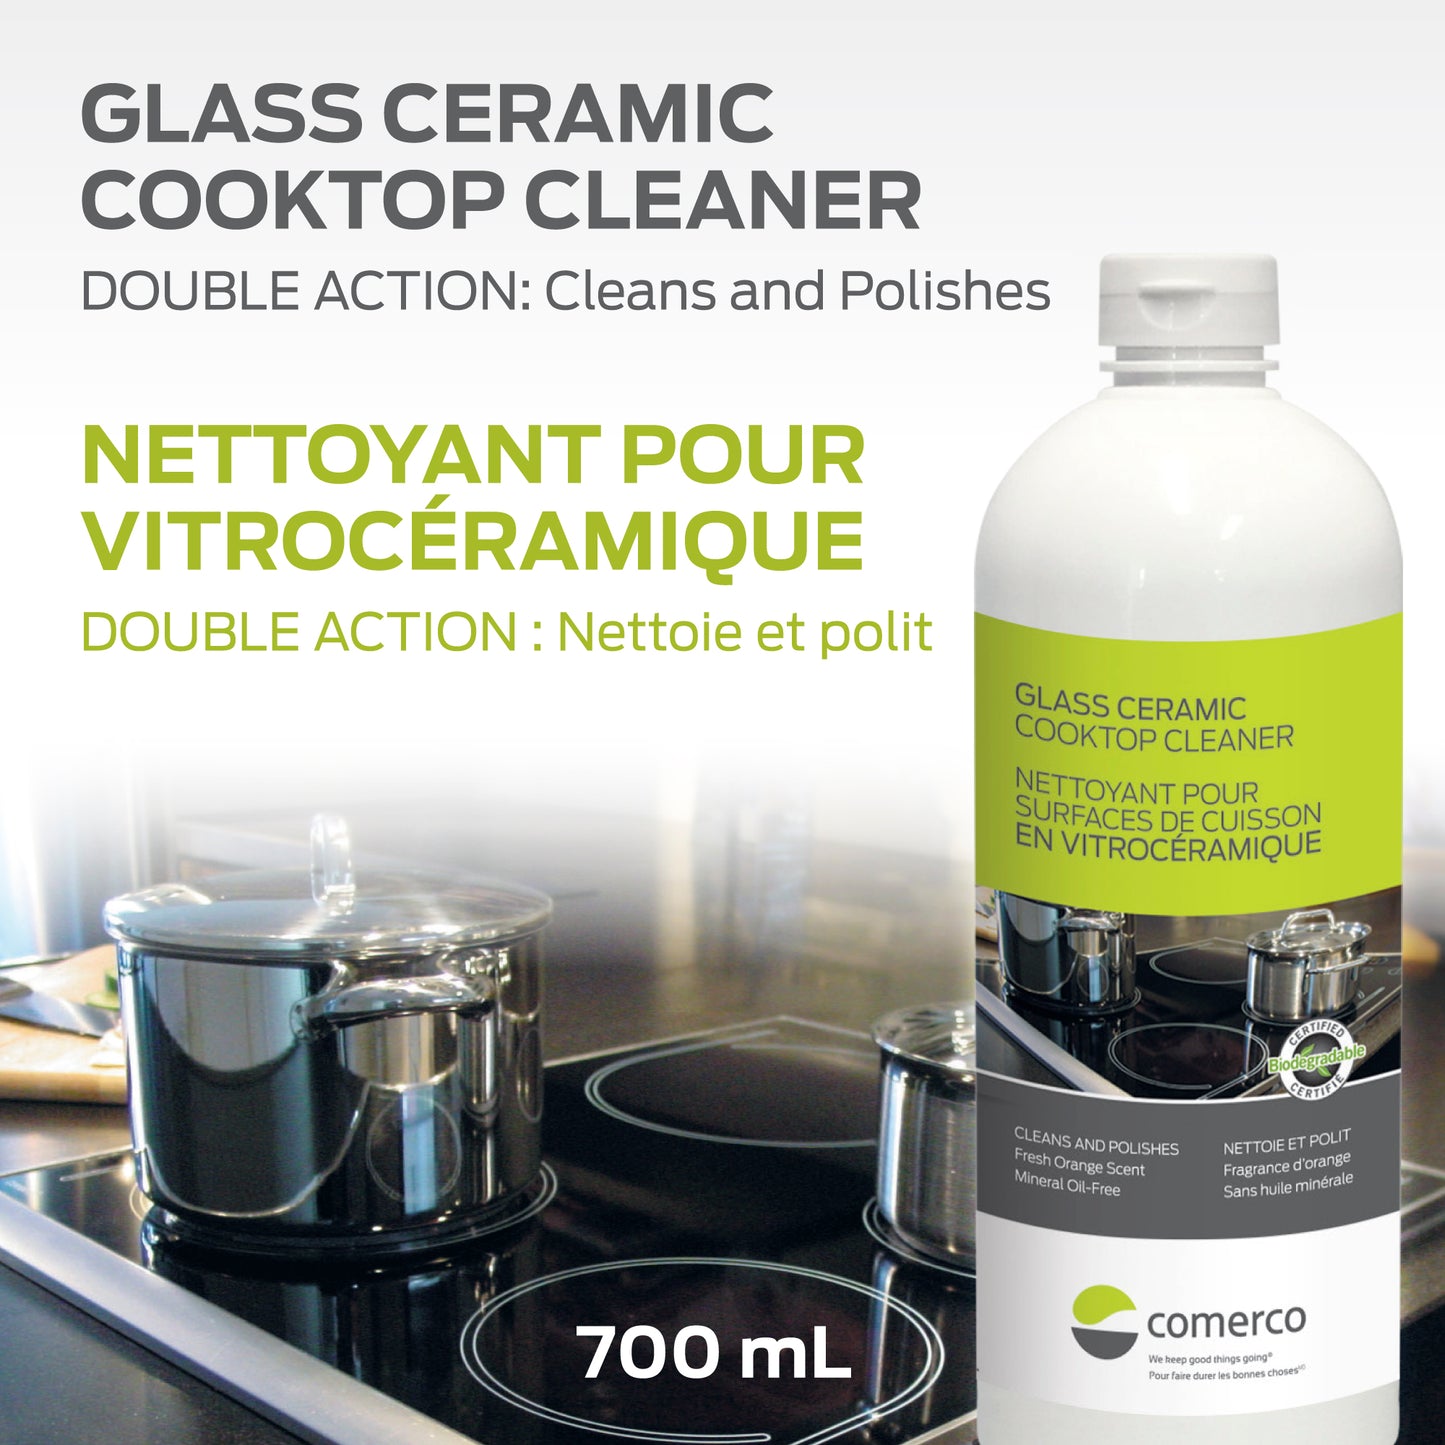 Nettoyant pour surfaces de cuisson en vitrocéramique - 700 ml